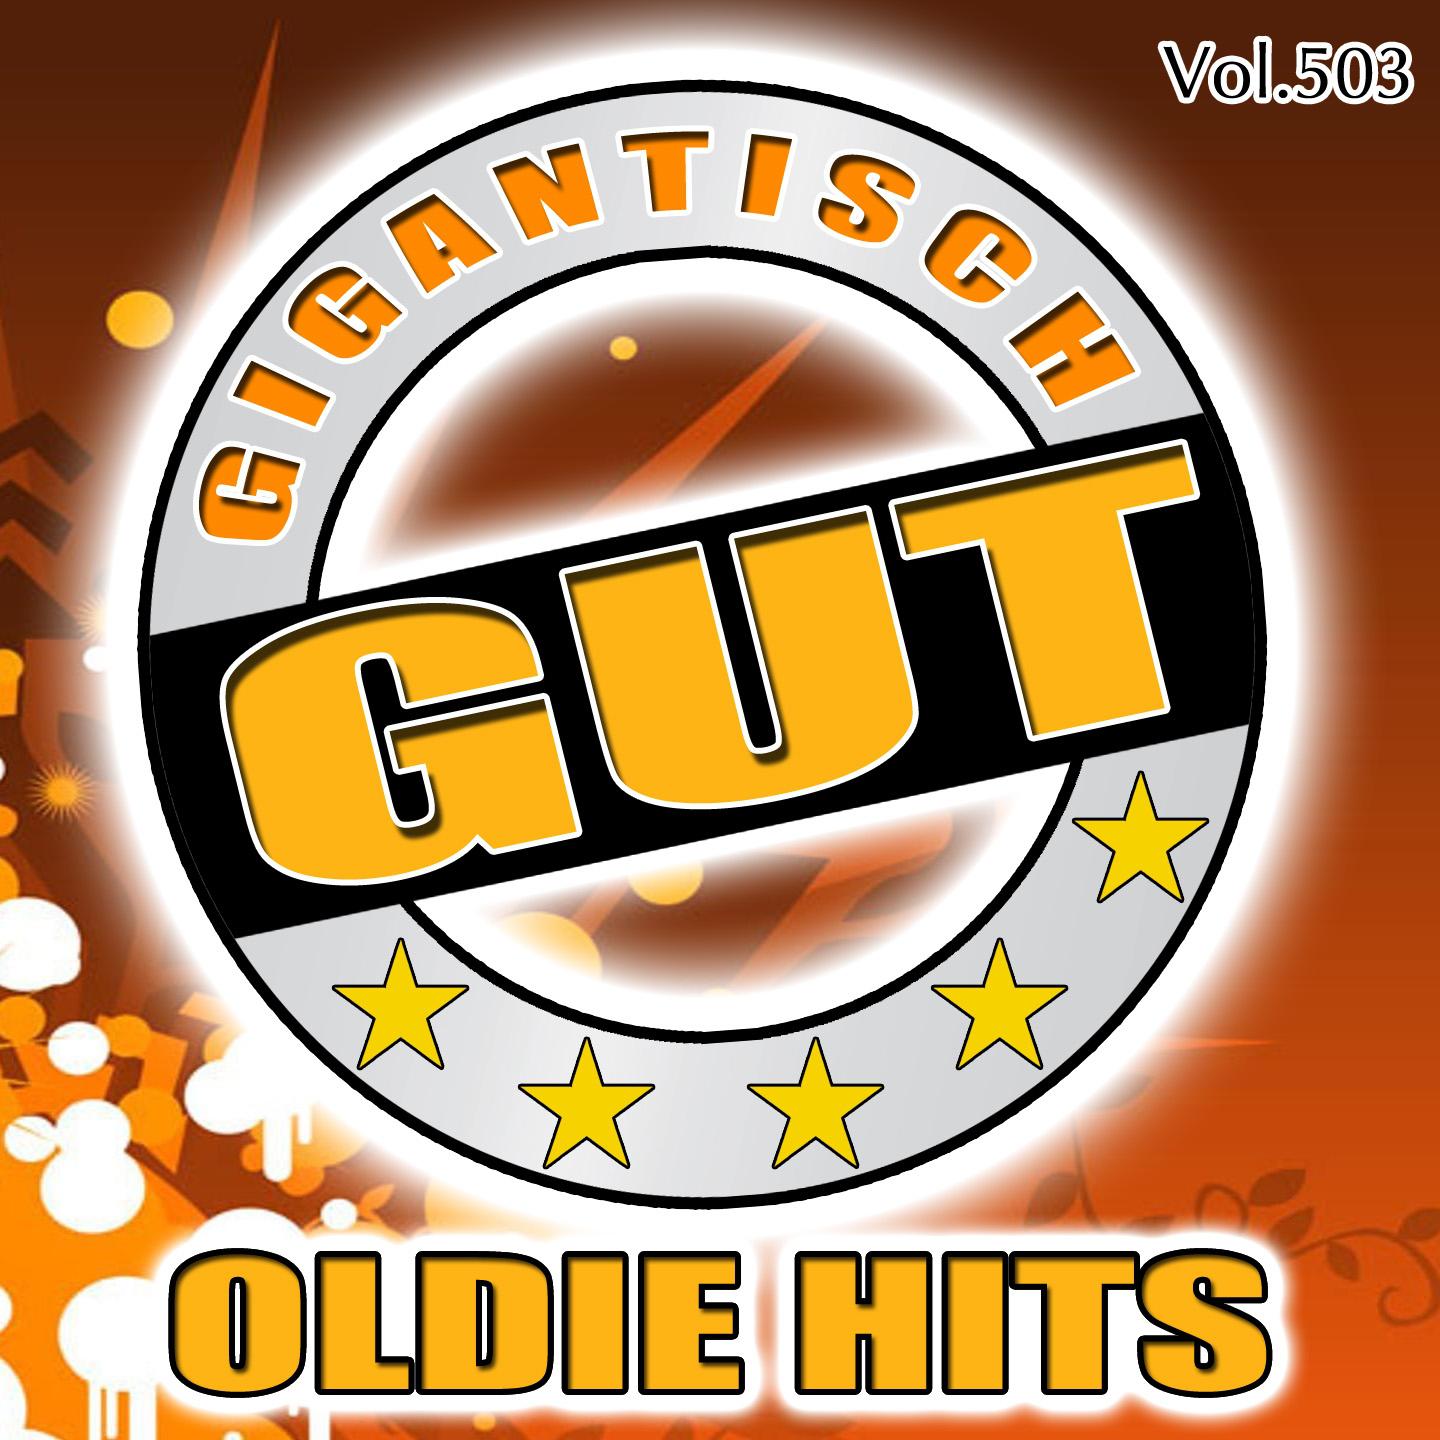 Gigantisch Gut: Oldie Hits, Vol. 503